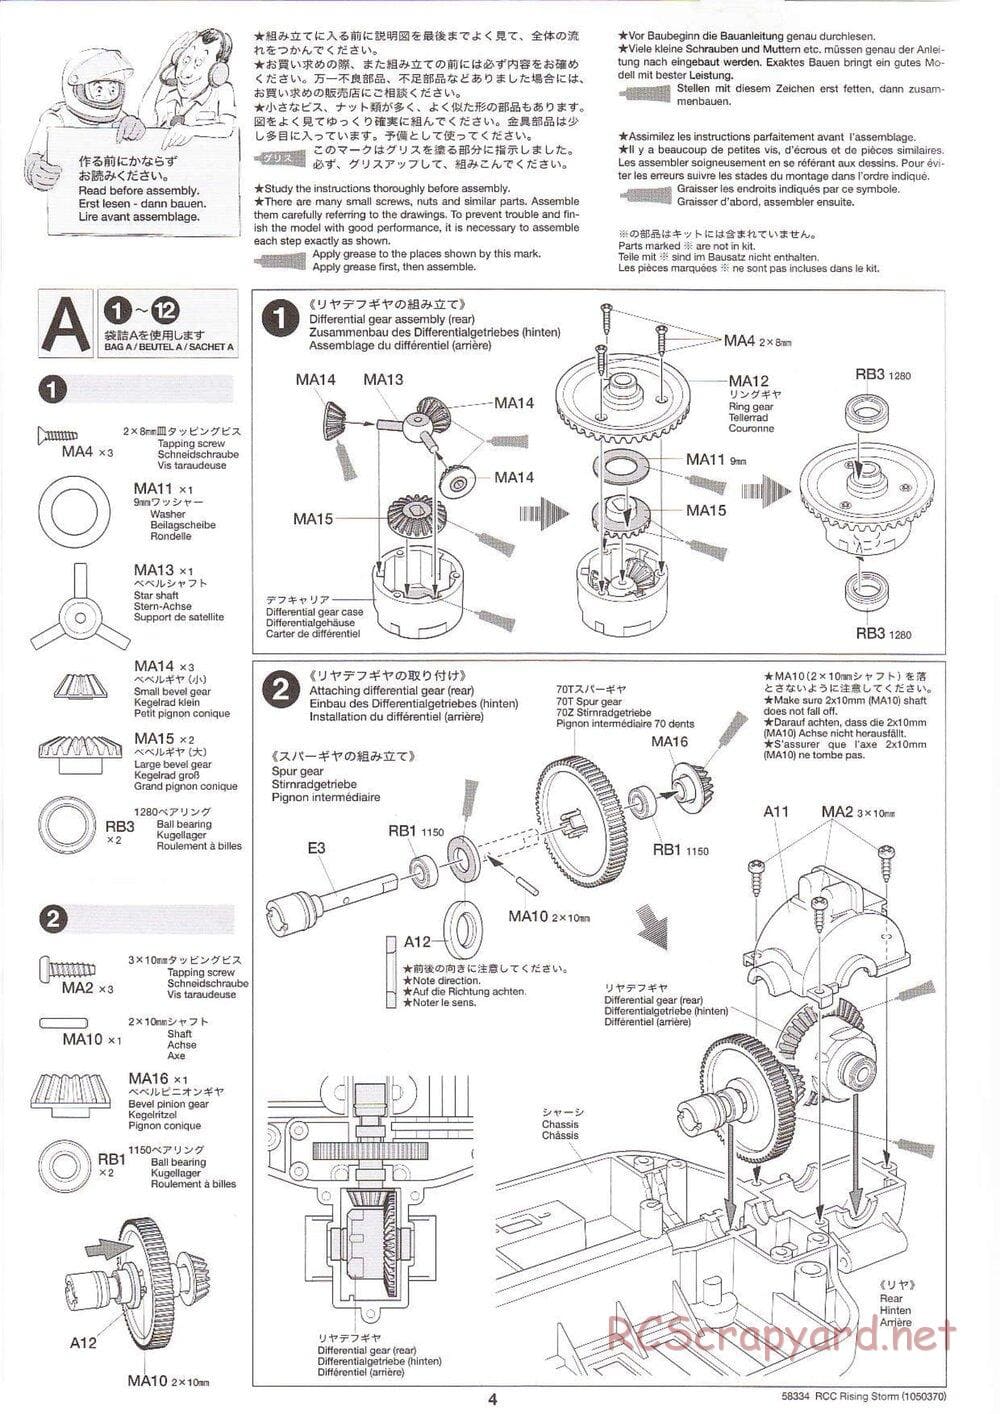 Tamiya - Rising Storm Chassis - Manual - Page 4